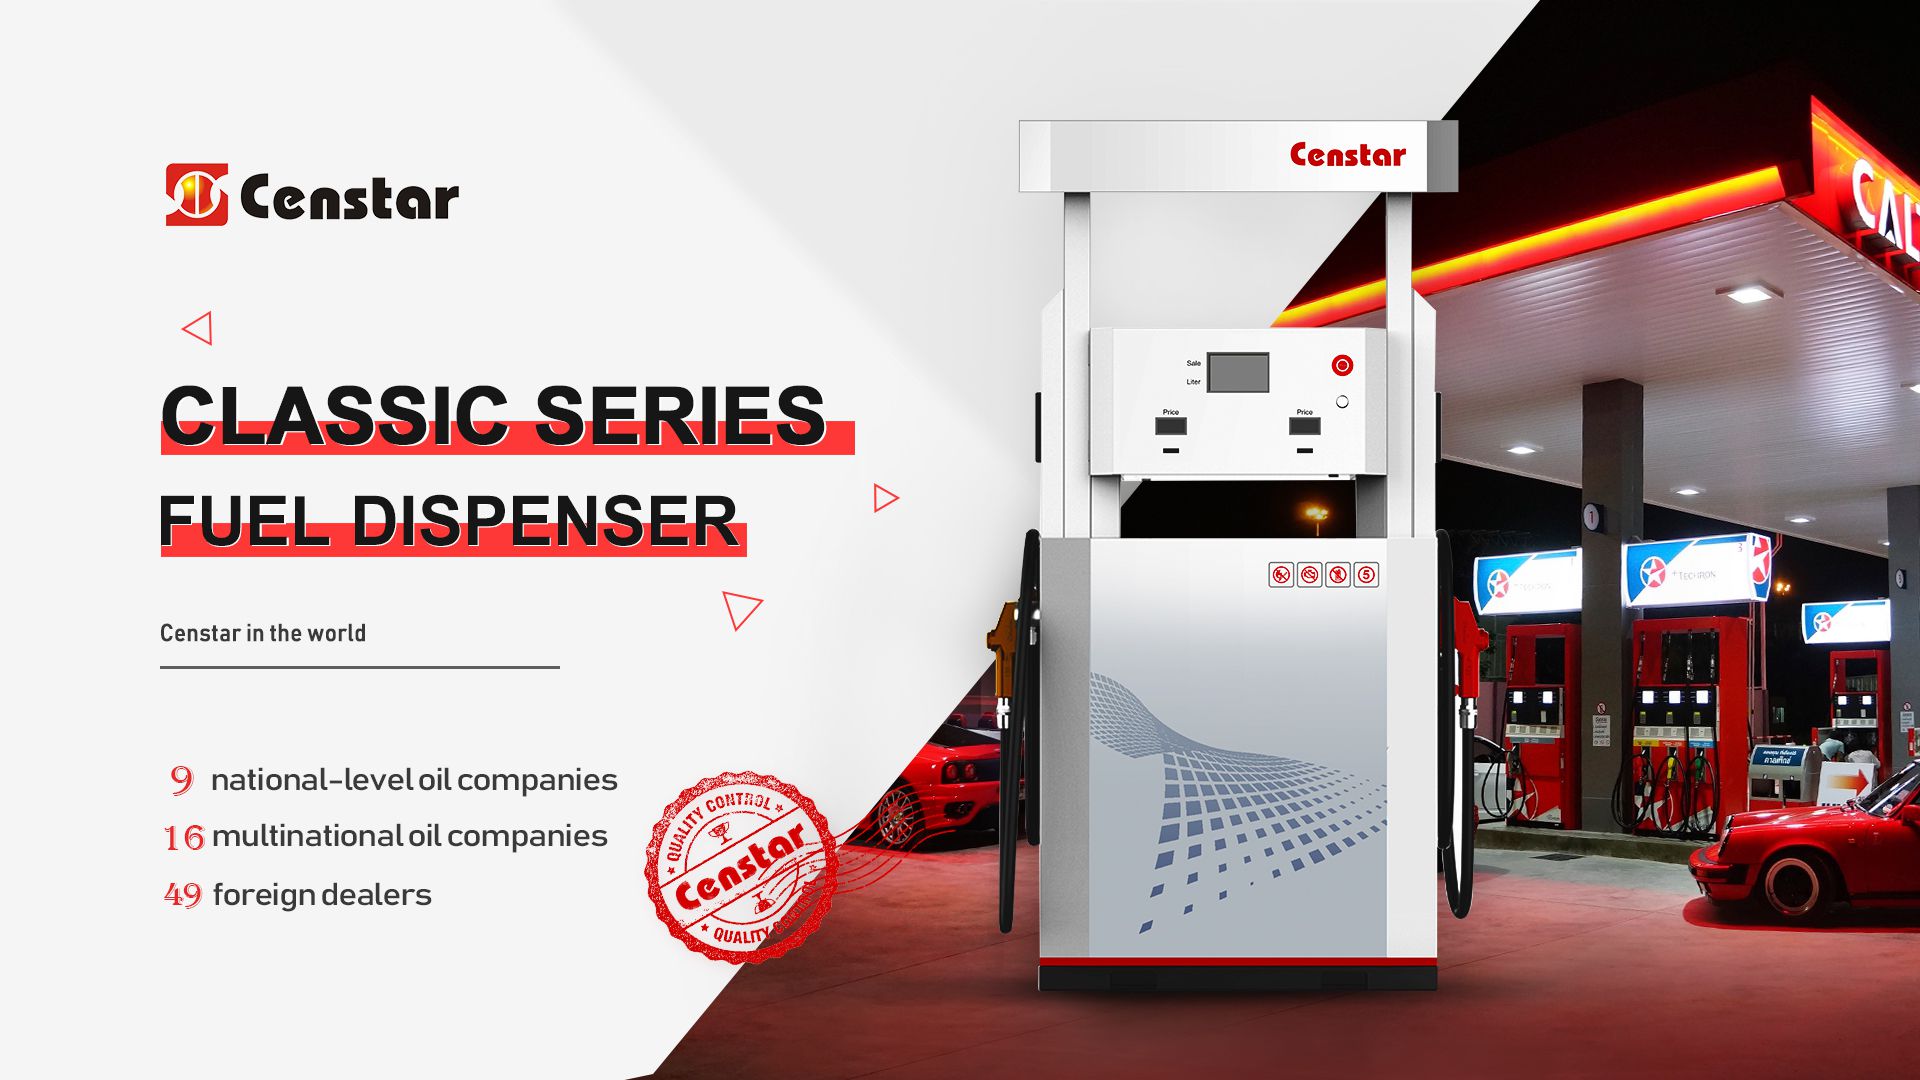 Censtar classic series fuel dispenser